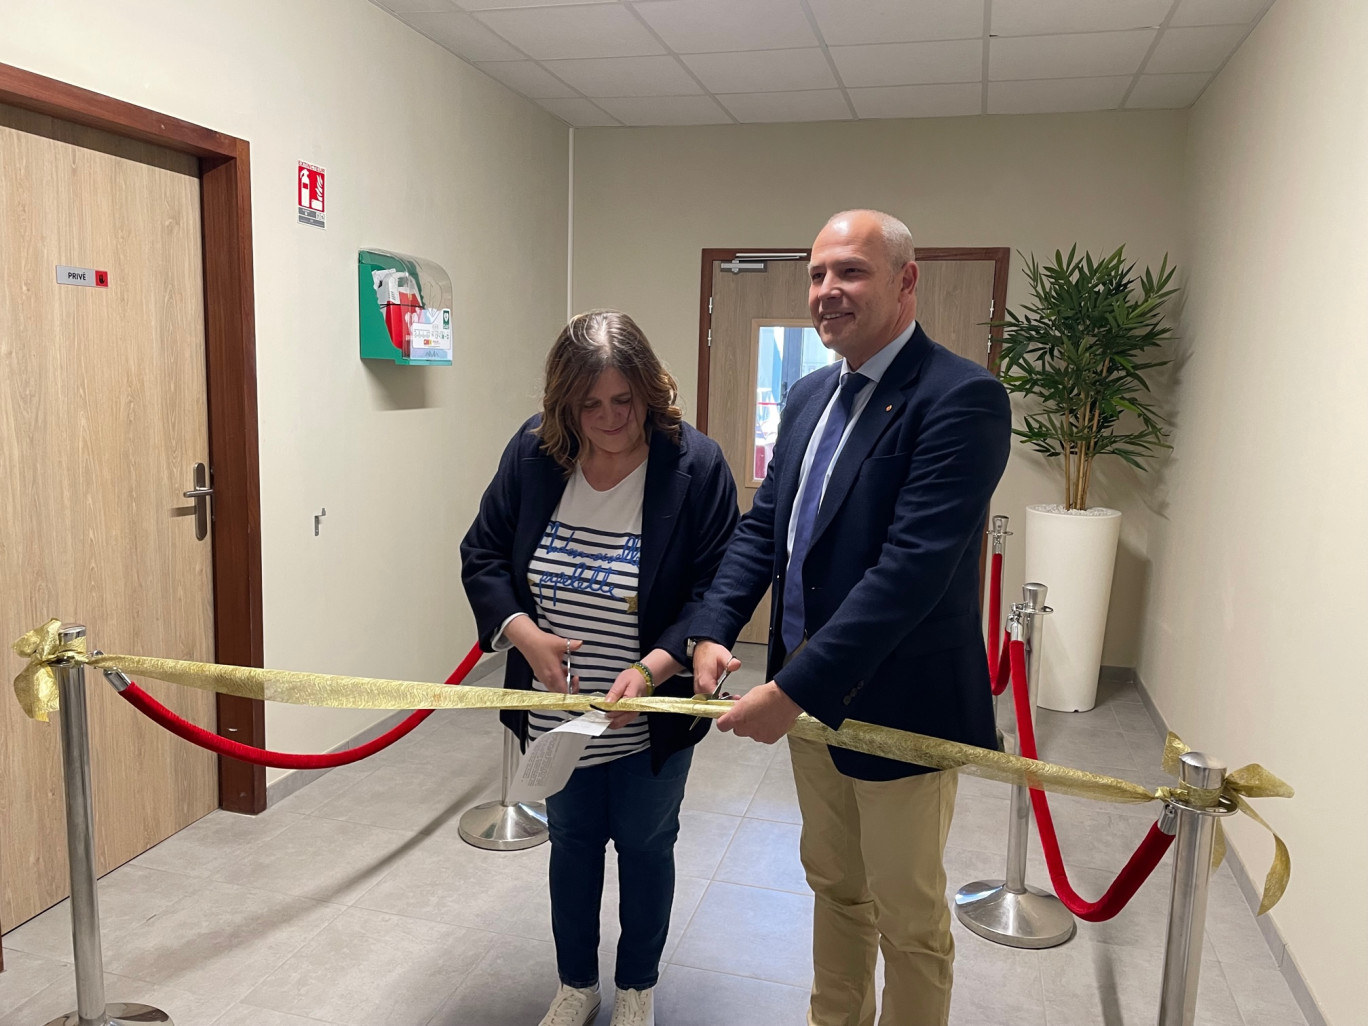 L’inauguration de l’extension de ses locaux situé au 55, rue Sully à Amiens avec Jean-Luc Mention, président de l'Irfa-Apisup et Christine Cotton, sa Directrice générale.